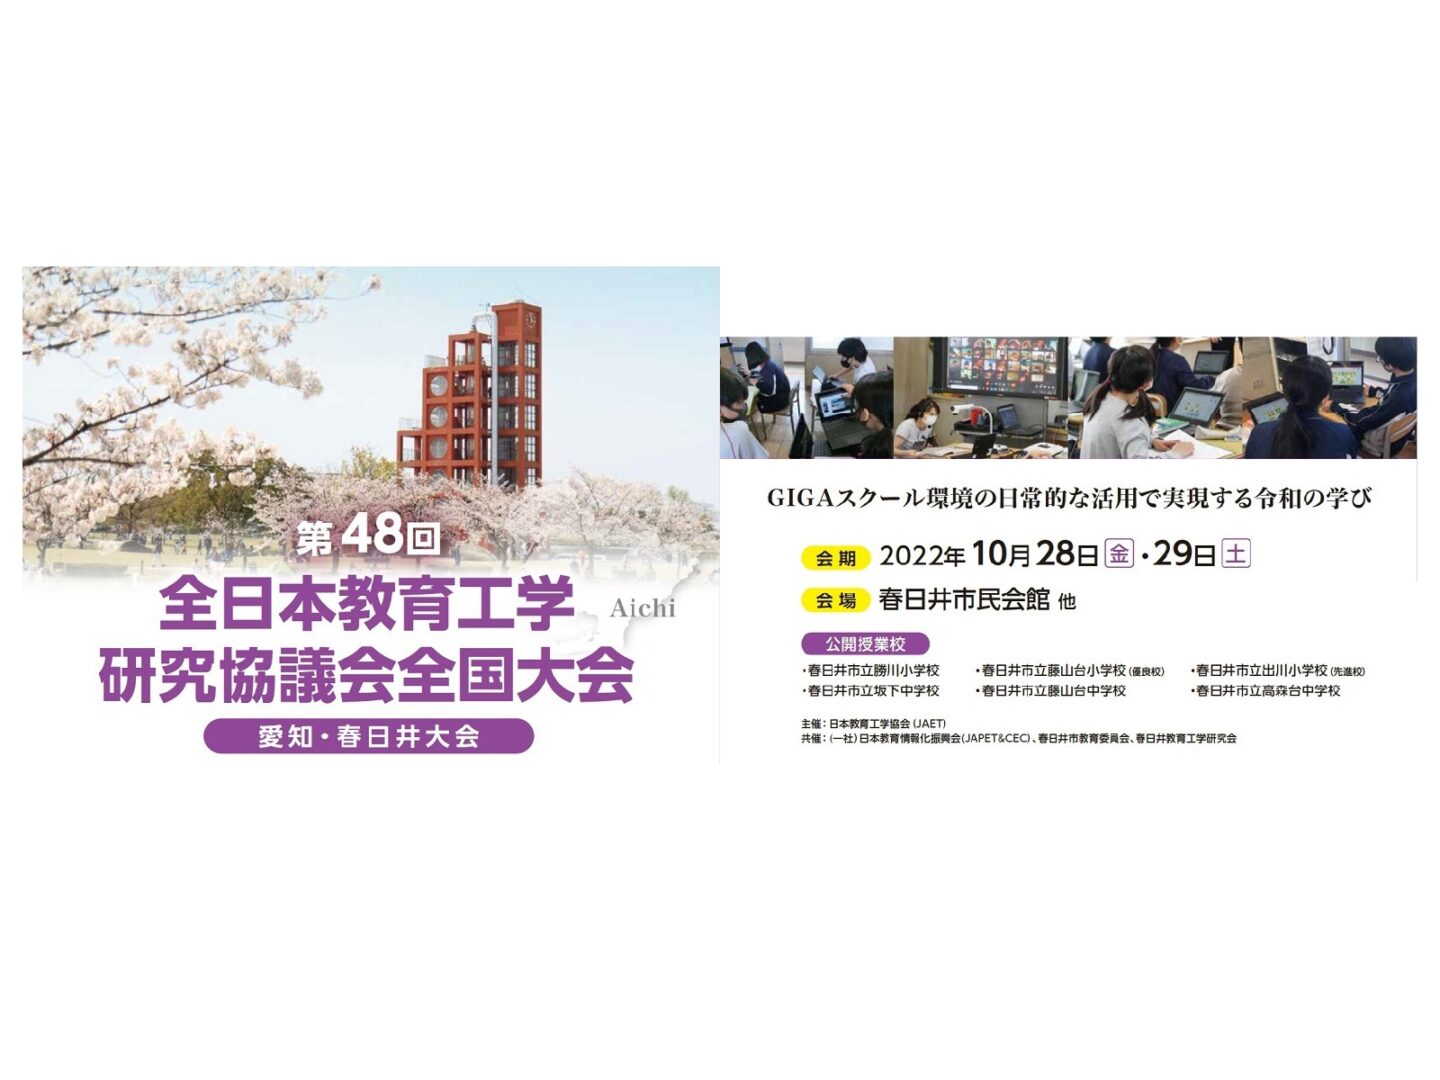 2022年度全国大会は、愛知県春日井市で愛知・春日井大会を開催します。